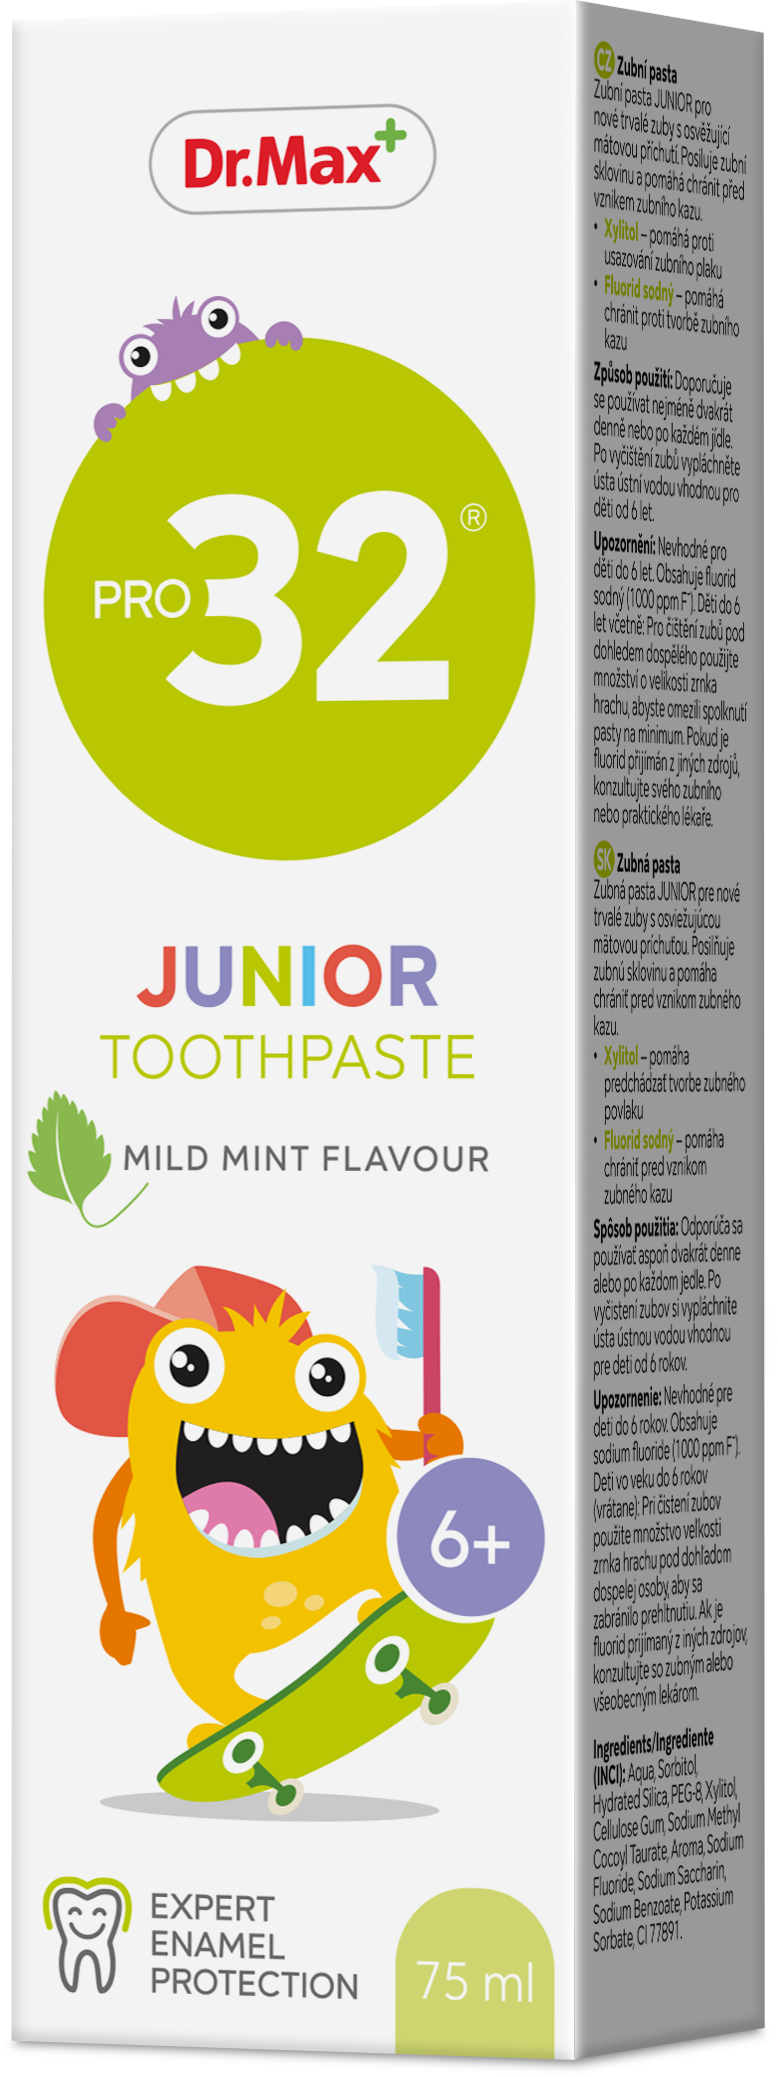 Dr.Max Pro32 Toothpaste Junior 6 75ml